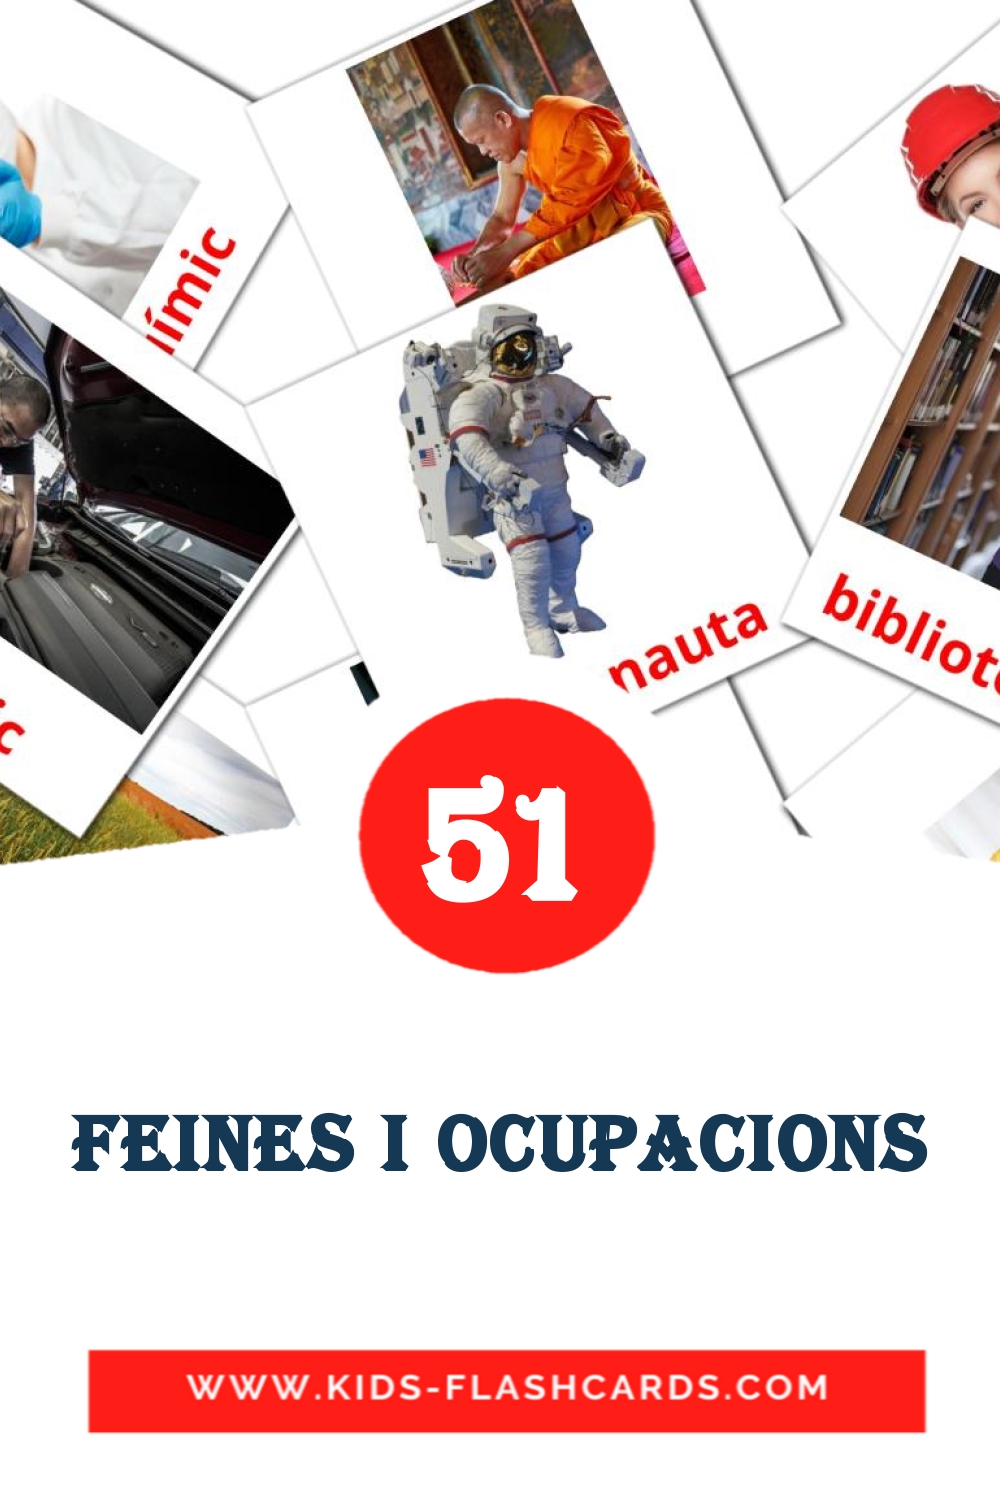 51 carte illustrate di Feines i Ocupacions per la scuola materna in catalano